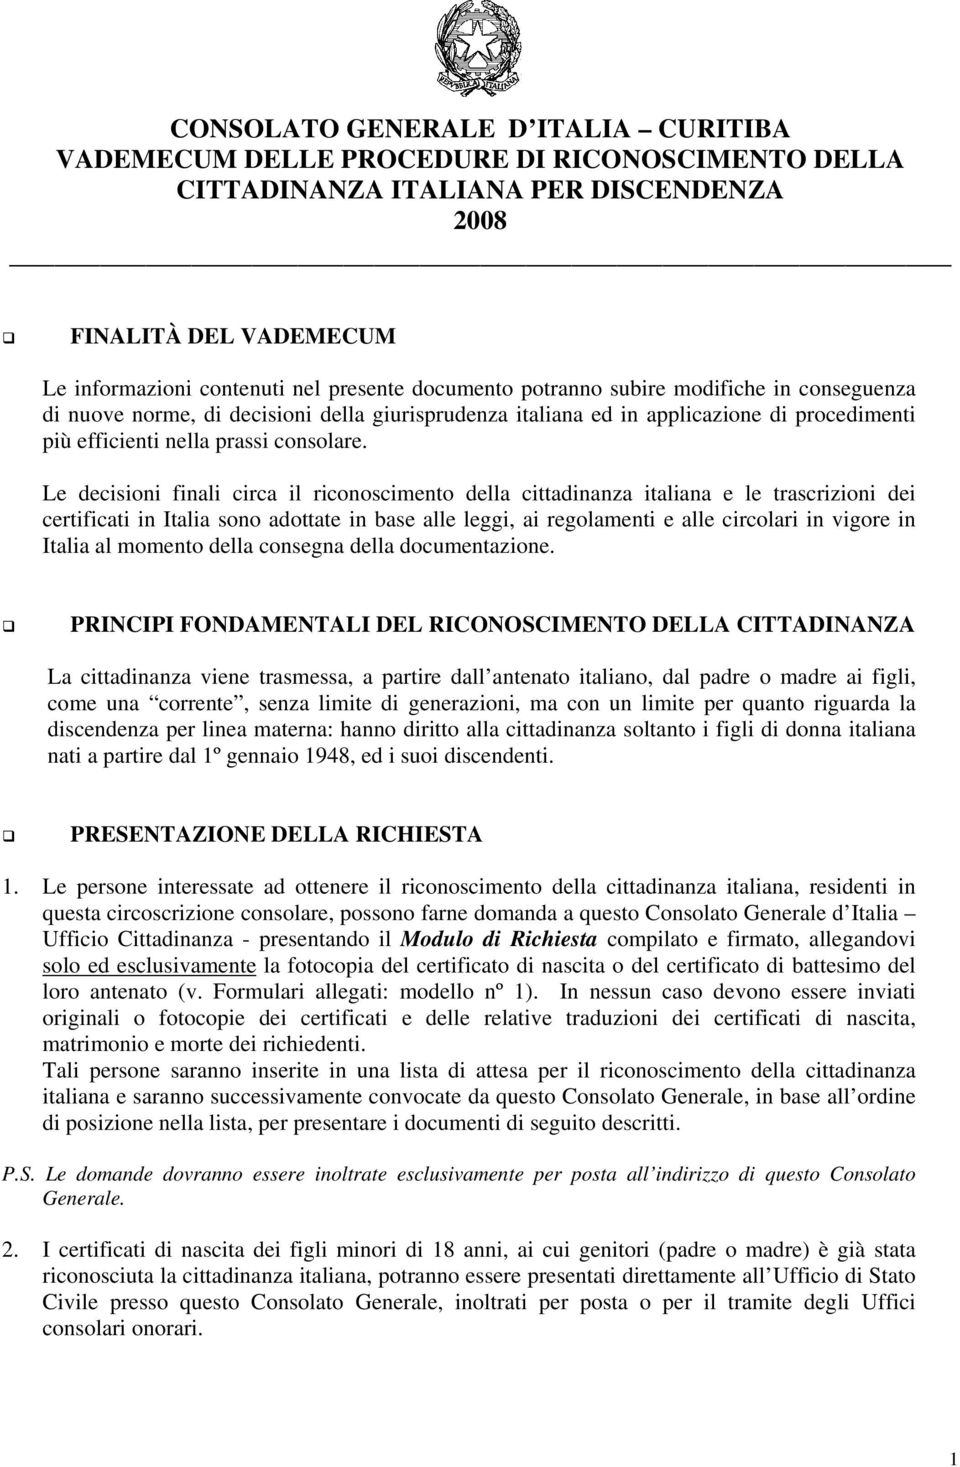 Le decisioni finali circa il riconoscimento della cittadinanza italiana e le trascrizioni dei certificati in Italia sono adottate in base alle leggi, ai regolamenti e alle circolari in vigore in